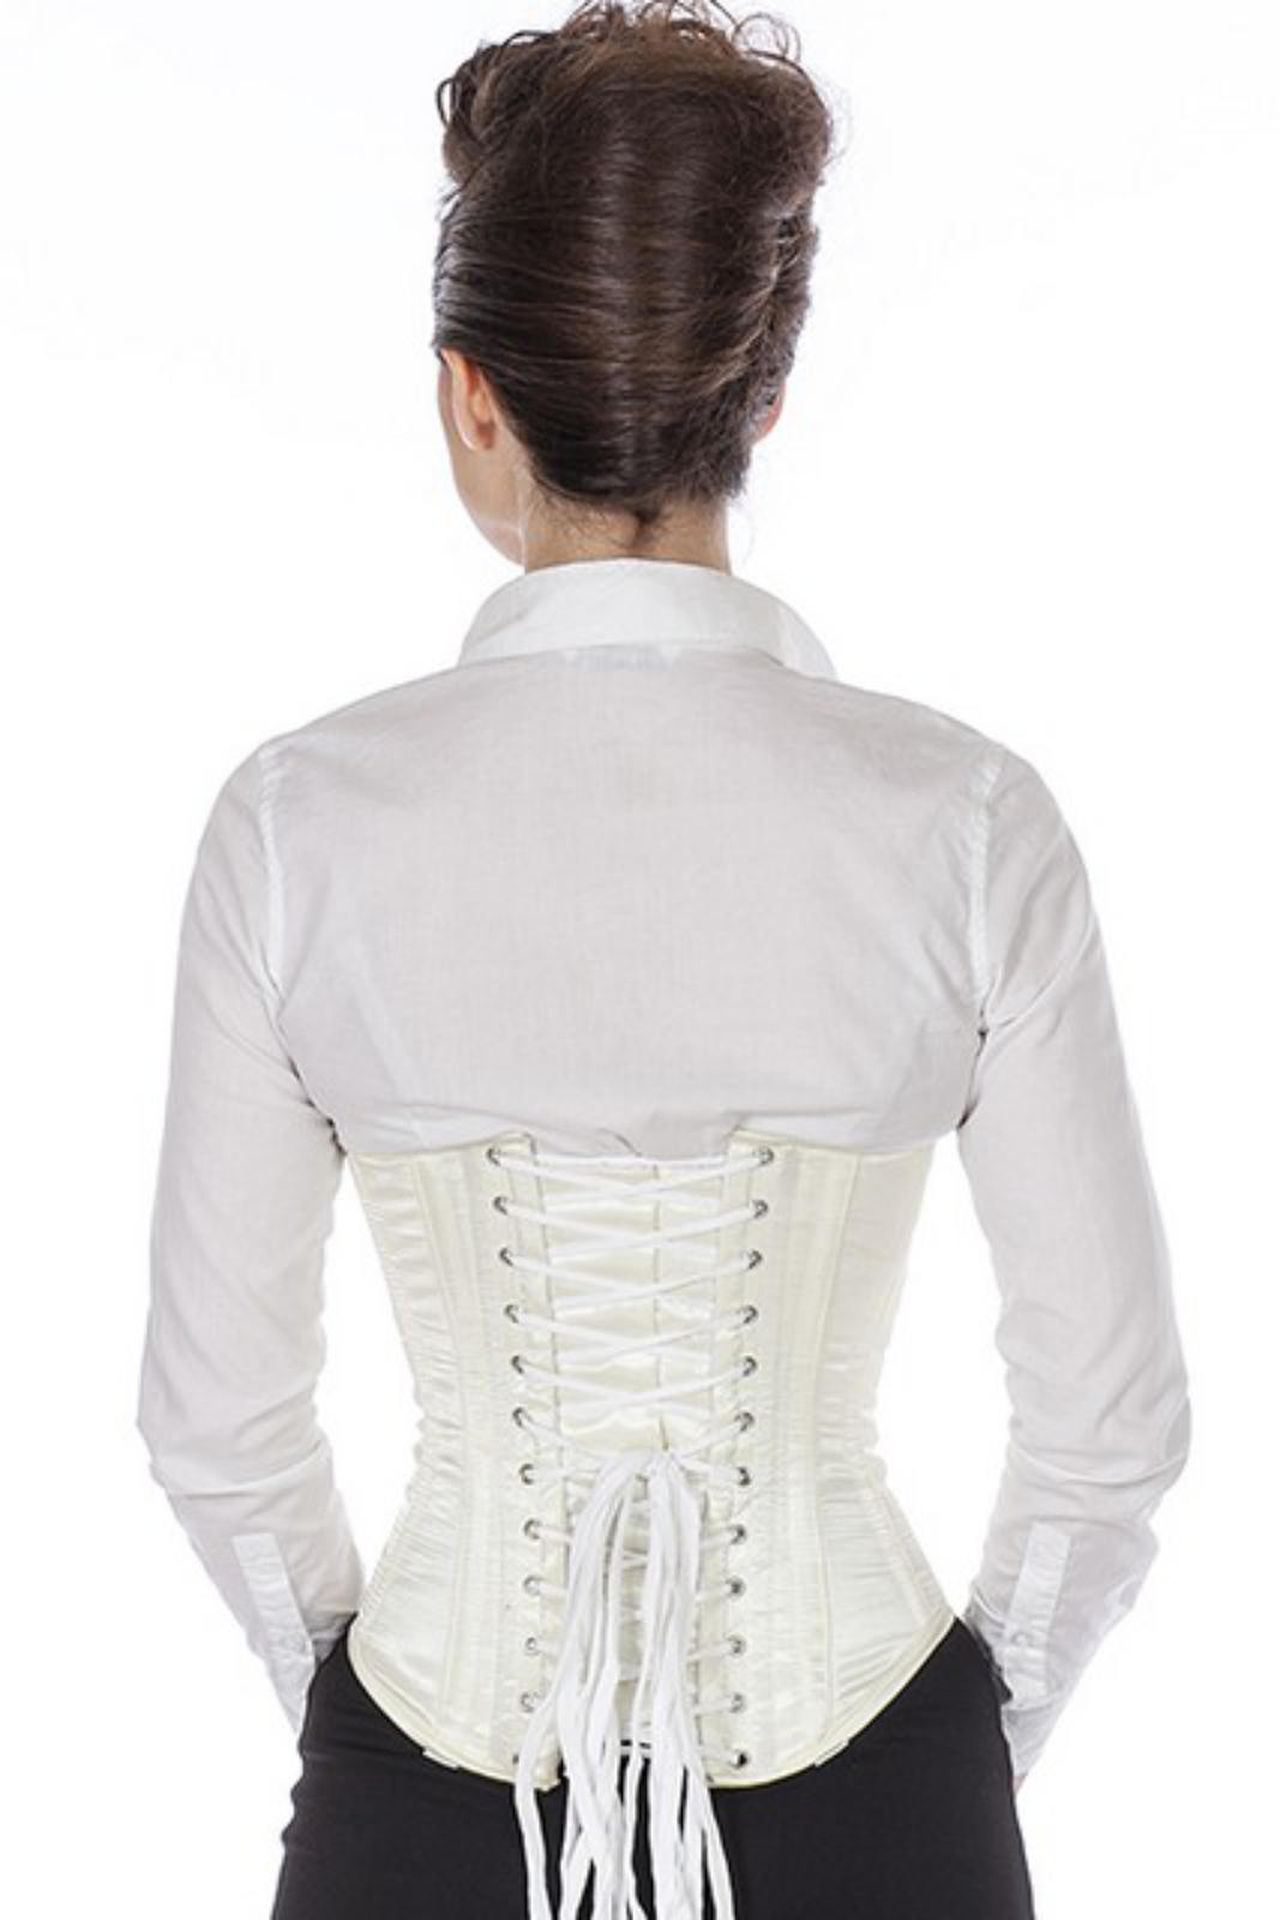 Satijn corset ivory onderborst Korset su19